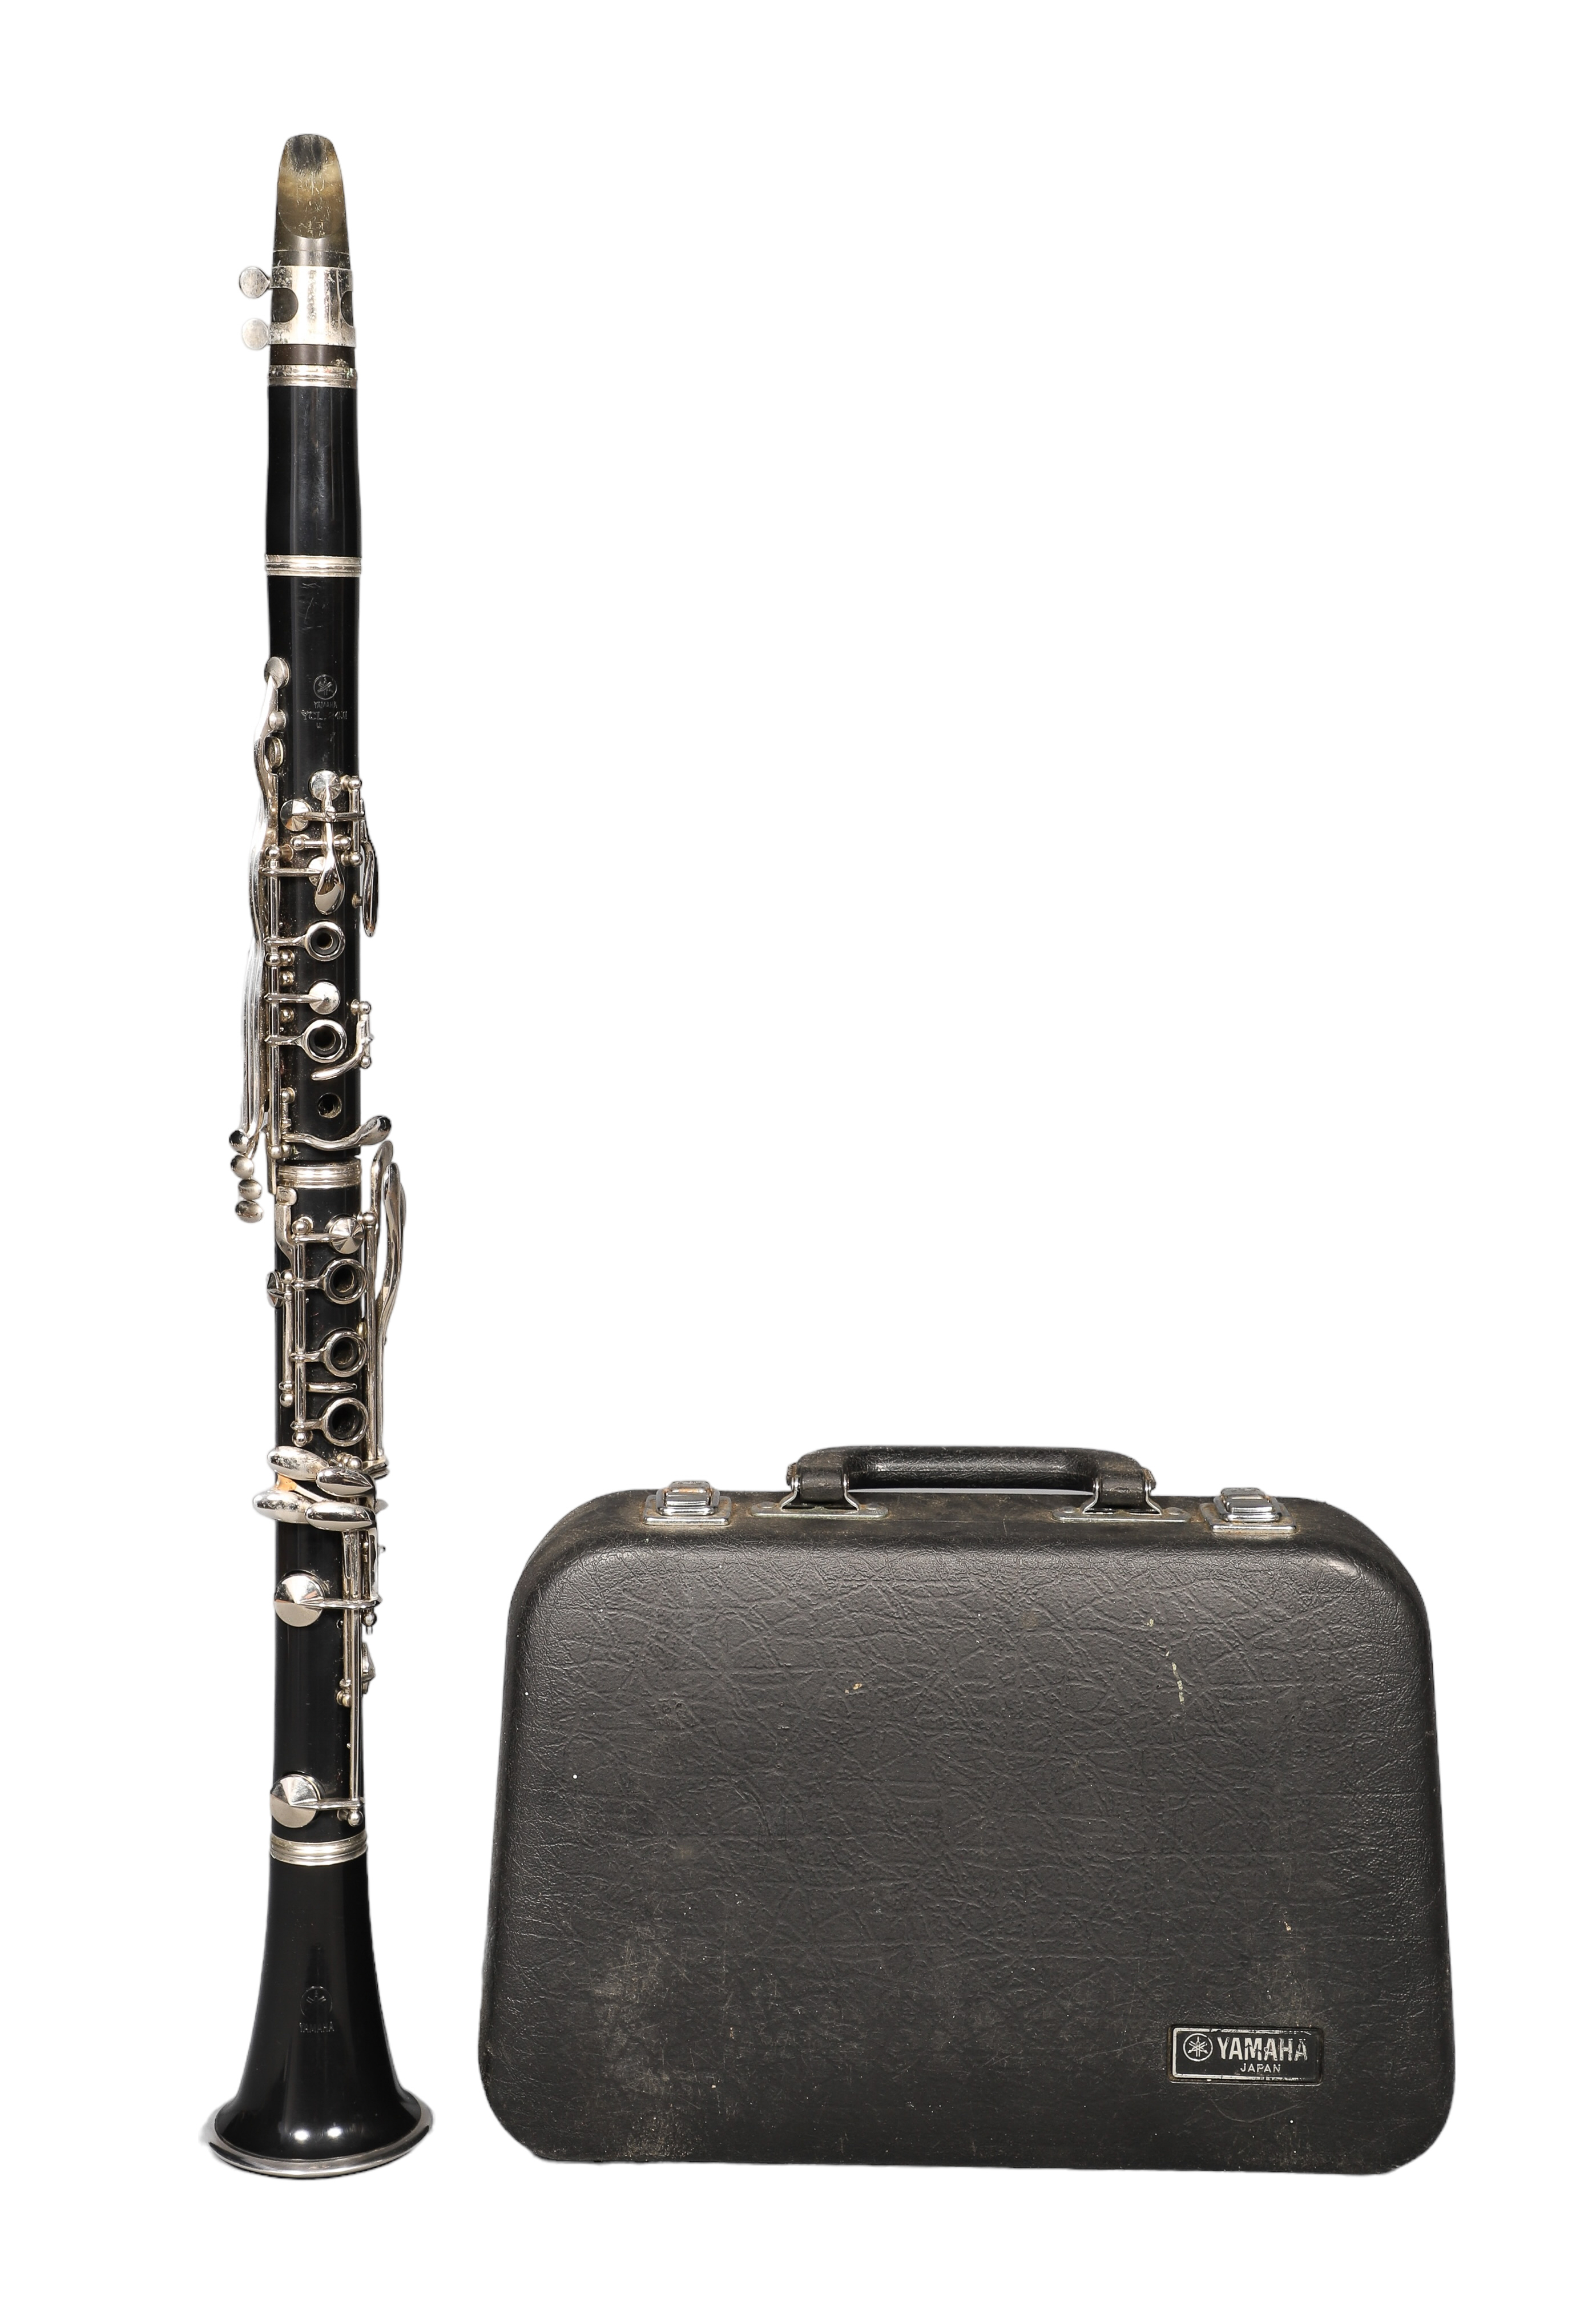 Yamaha YCL 24II clarinet, serial